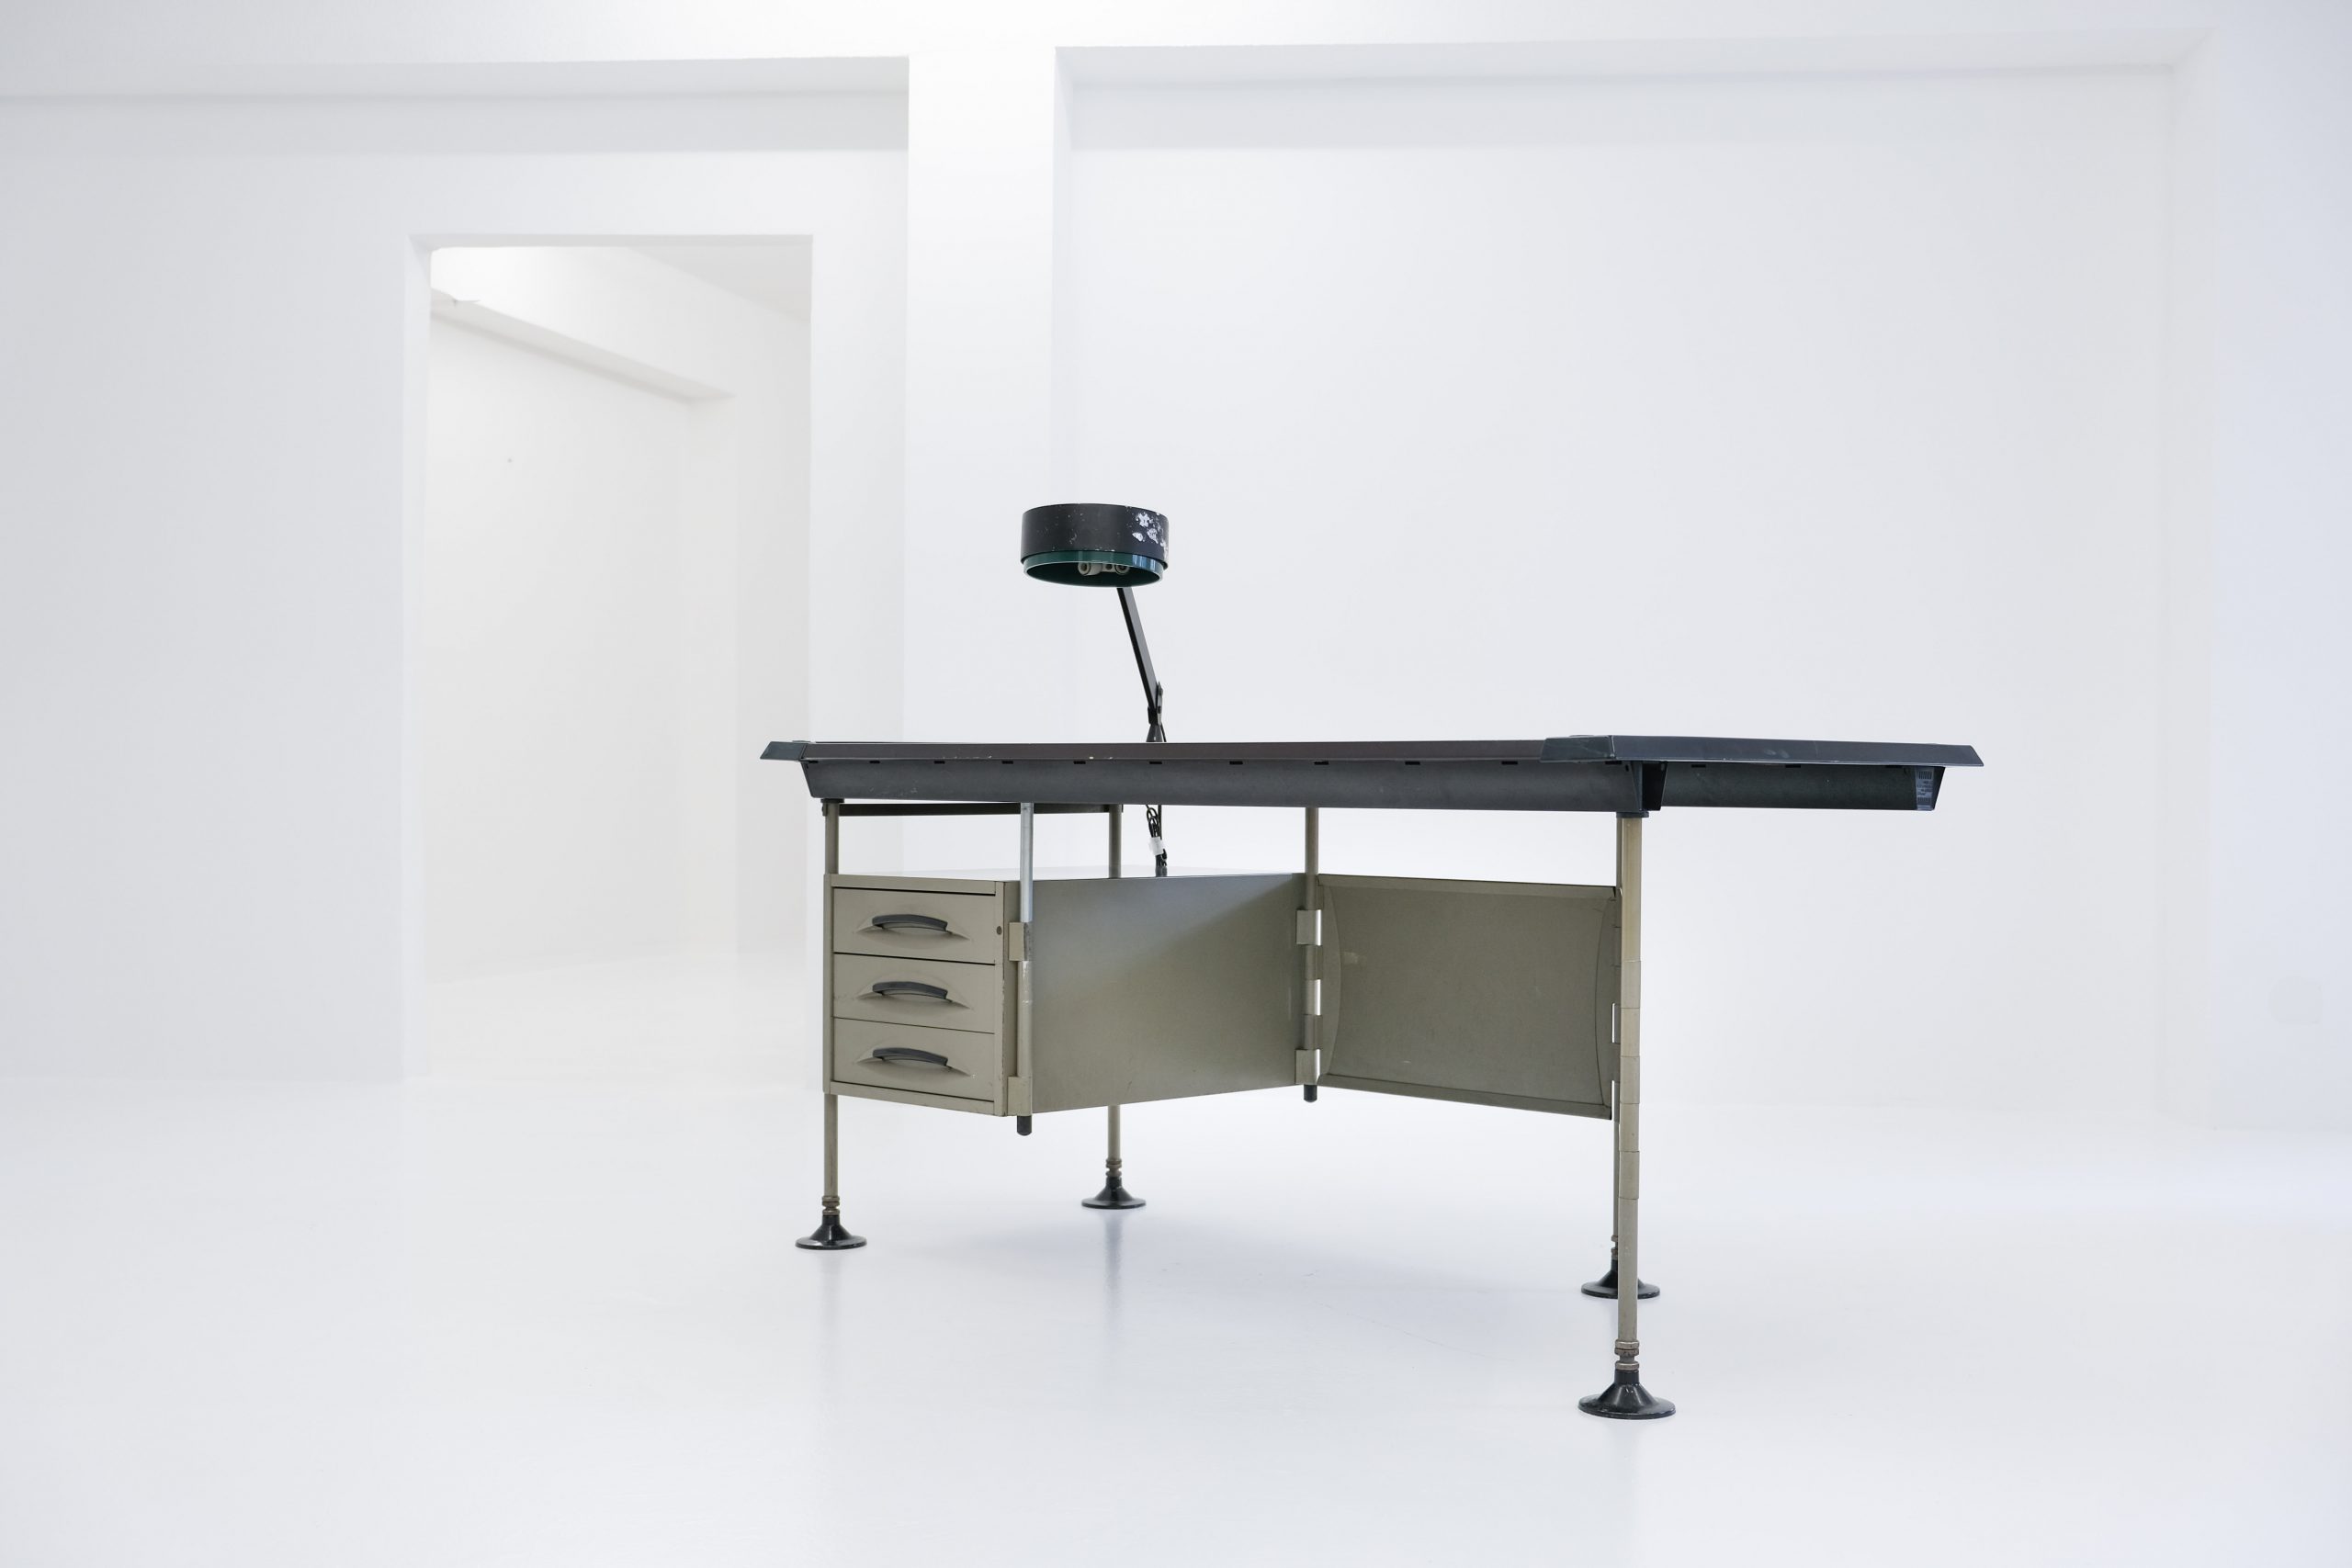 spazio desk with desk lamp, spazio desk, bbpr, studio bbpr bbpr Studio, banfi, belgiojoso, peressutti and rogers (bbpr), olivetti